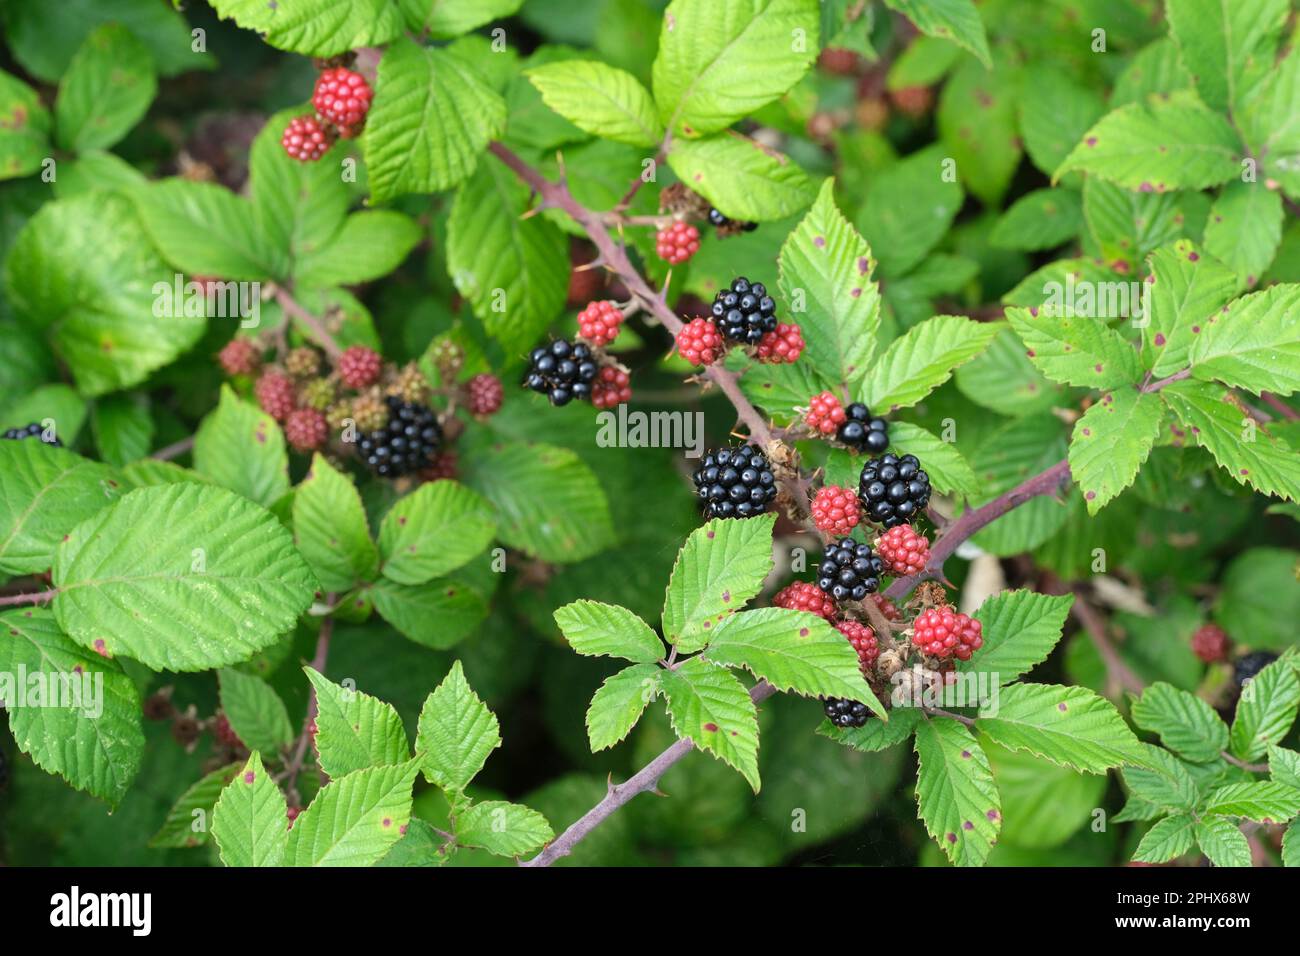 Rubus fruticosus, mûre, mûre, fruits comestibles poussant sur la brousse Banque D'Images